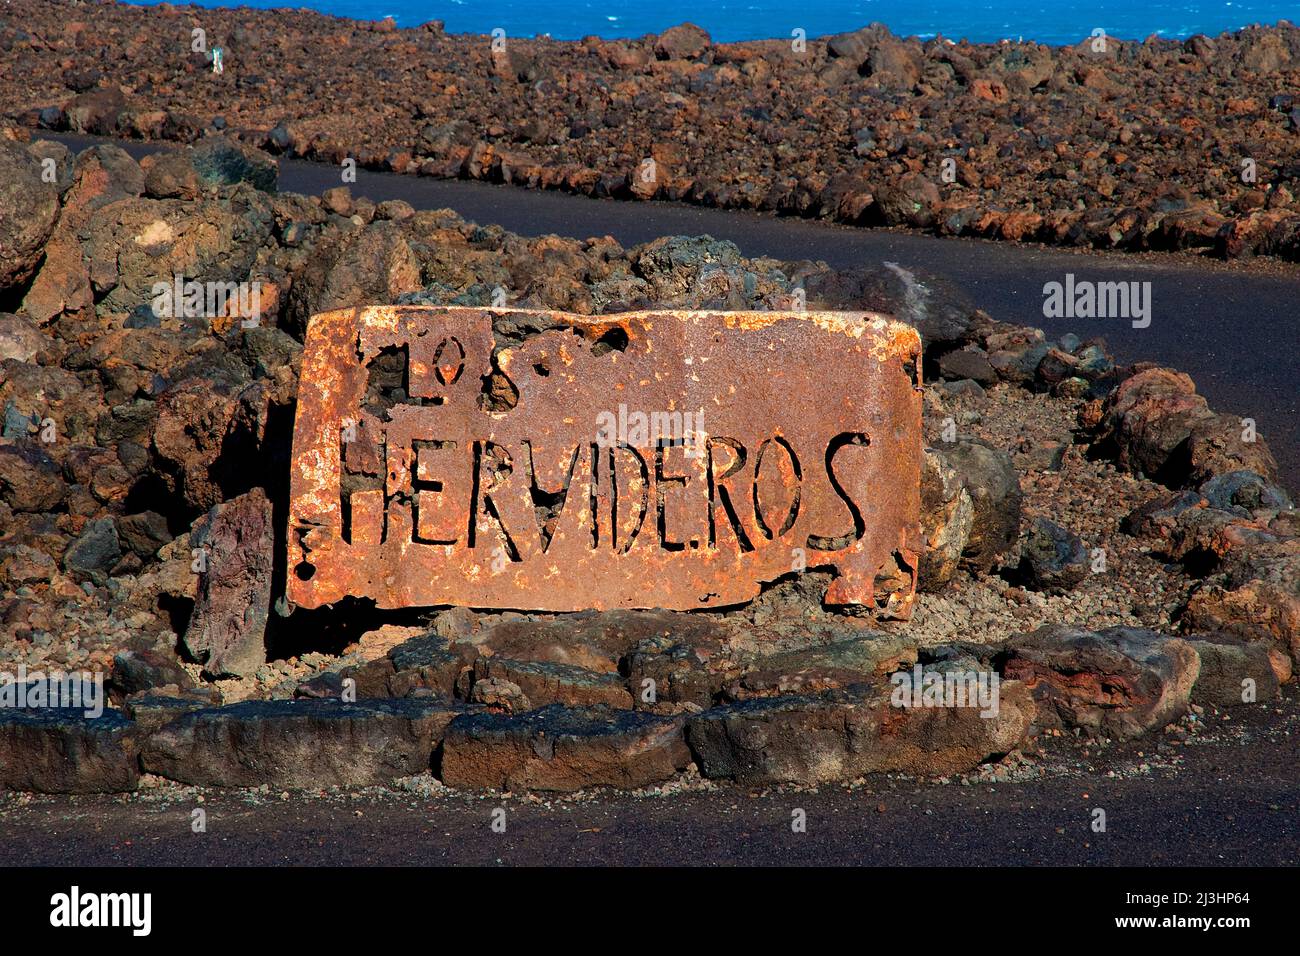 Isole Canarie, Lanzarote, isola vulcanica, costa sud-occidentale, aspra costa vulcanica, Forte surf, grotte di mare, segno con l'iscrizione 'Los Hervideros', sorge in mezzo alla roccia lavica Foto Stock